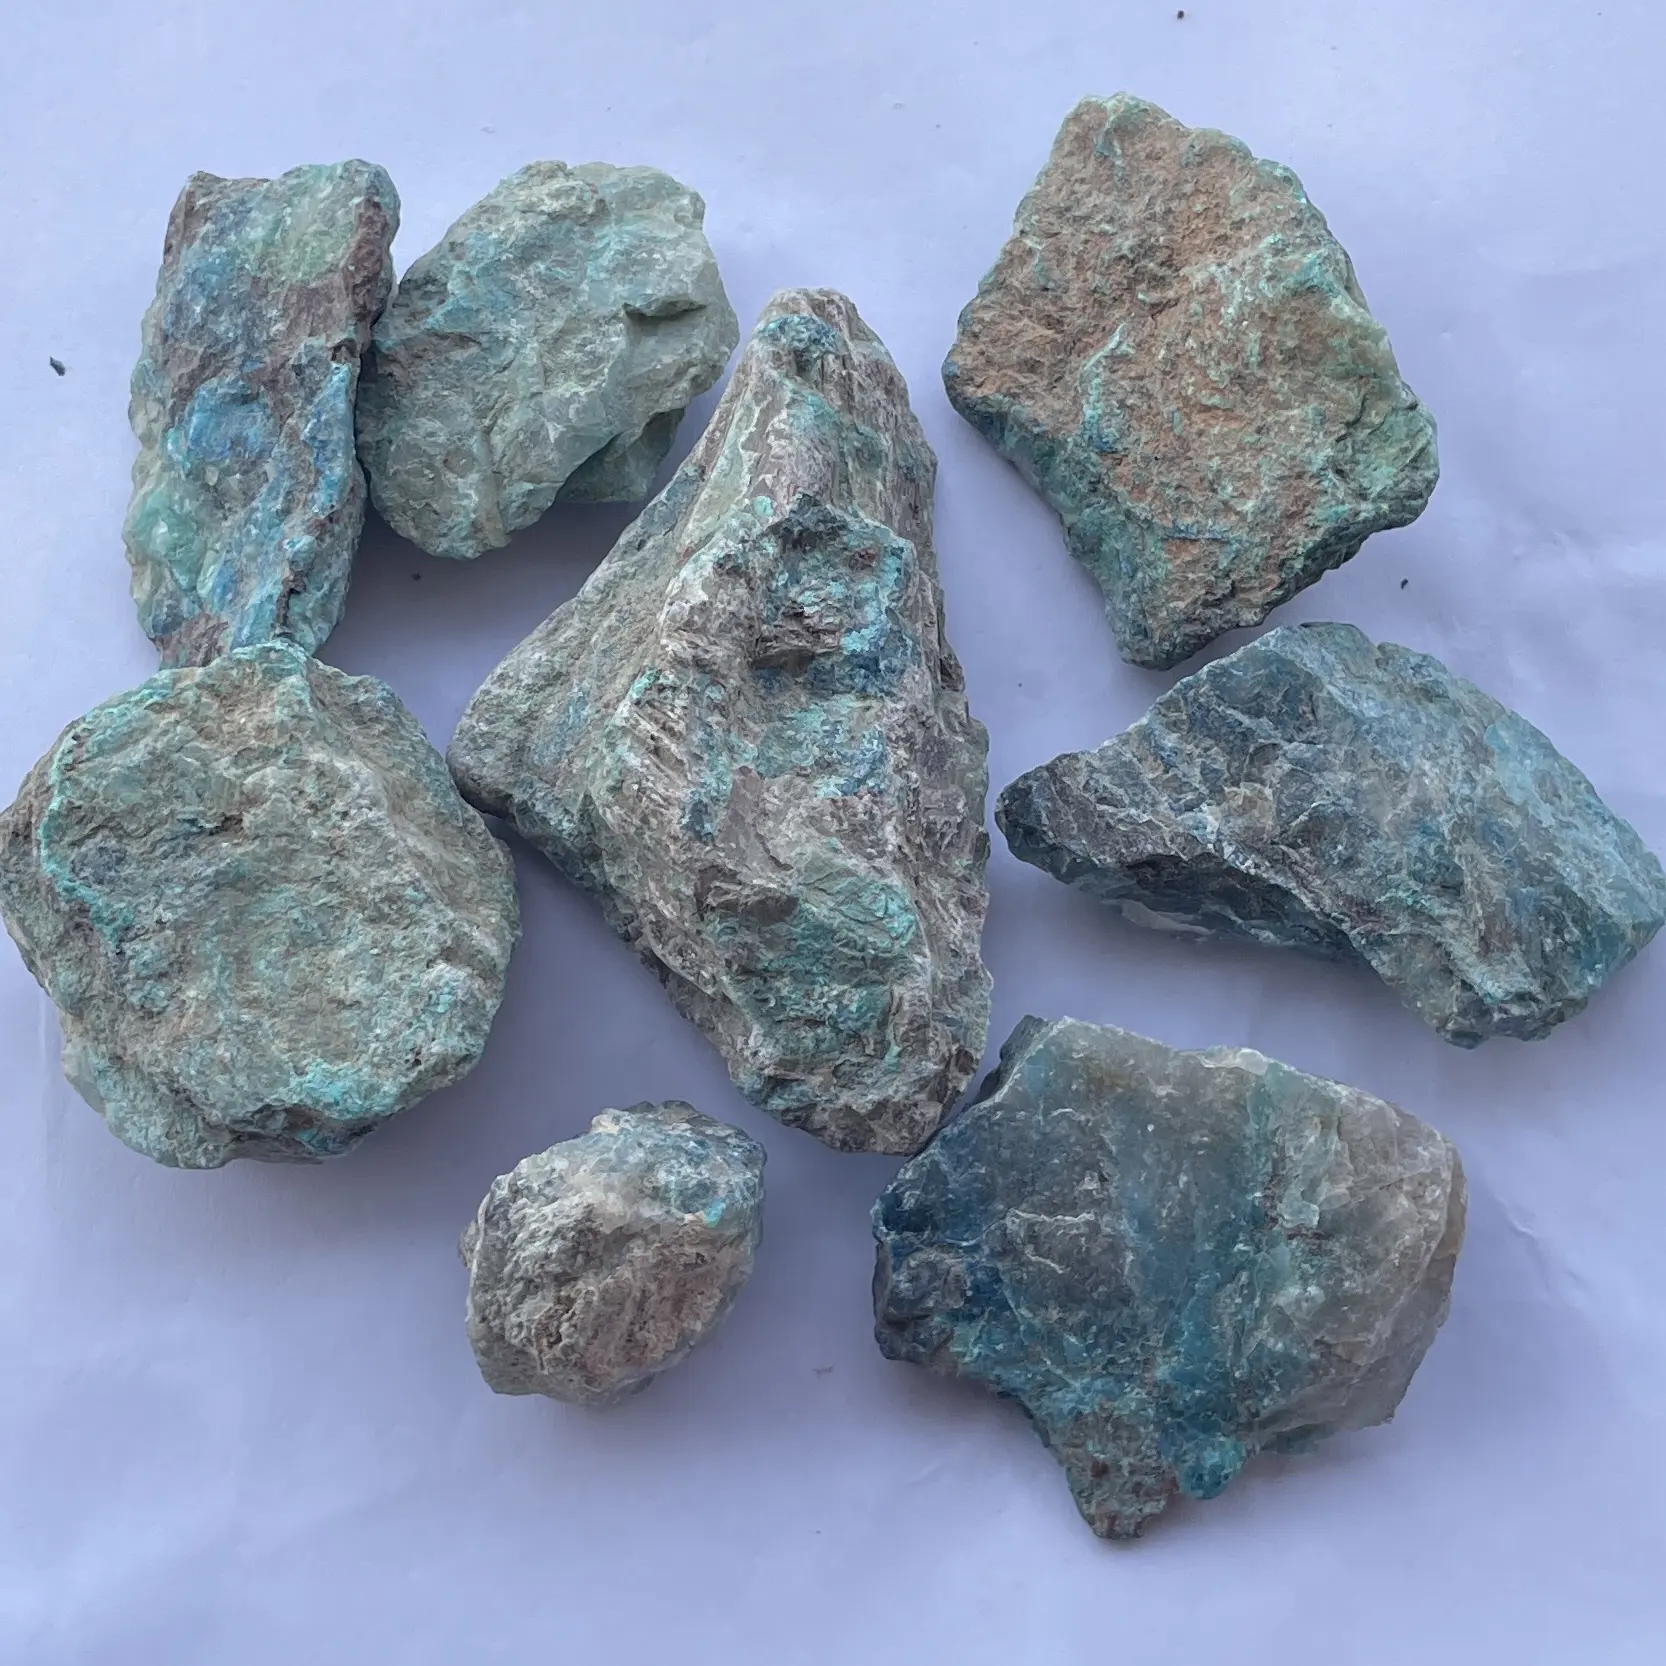 Tự nhiên màu xanh màu xanh lá cây chrysocolla thô đá quý mỗi kg gram giá nhà máy bán buôn đá mỏ Nhà cung cấp bán quý Alibaba